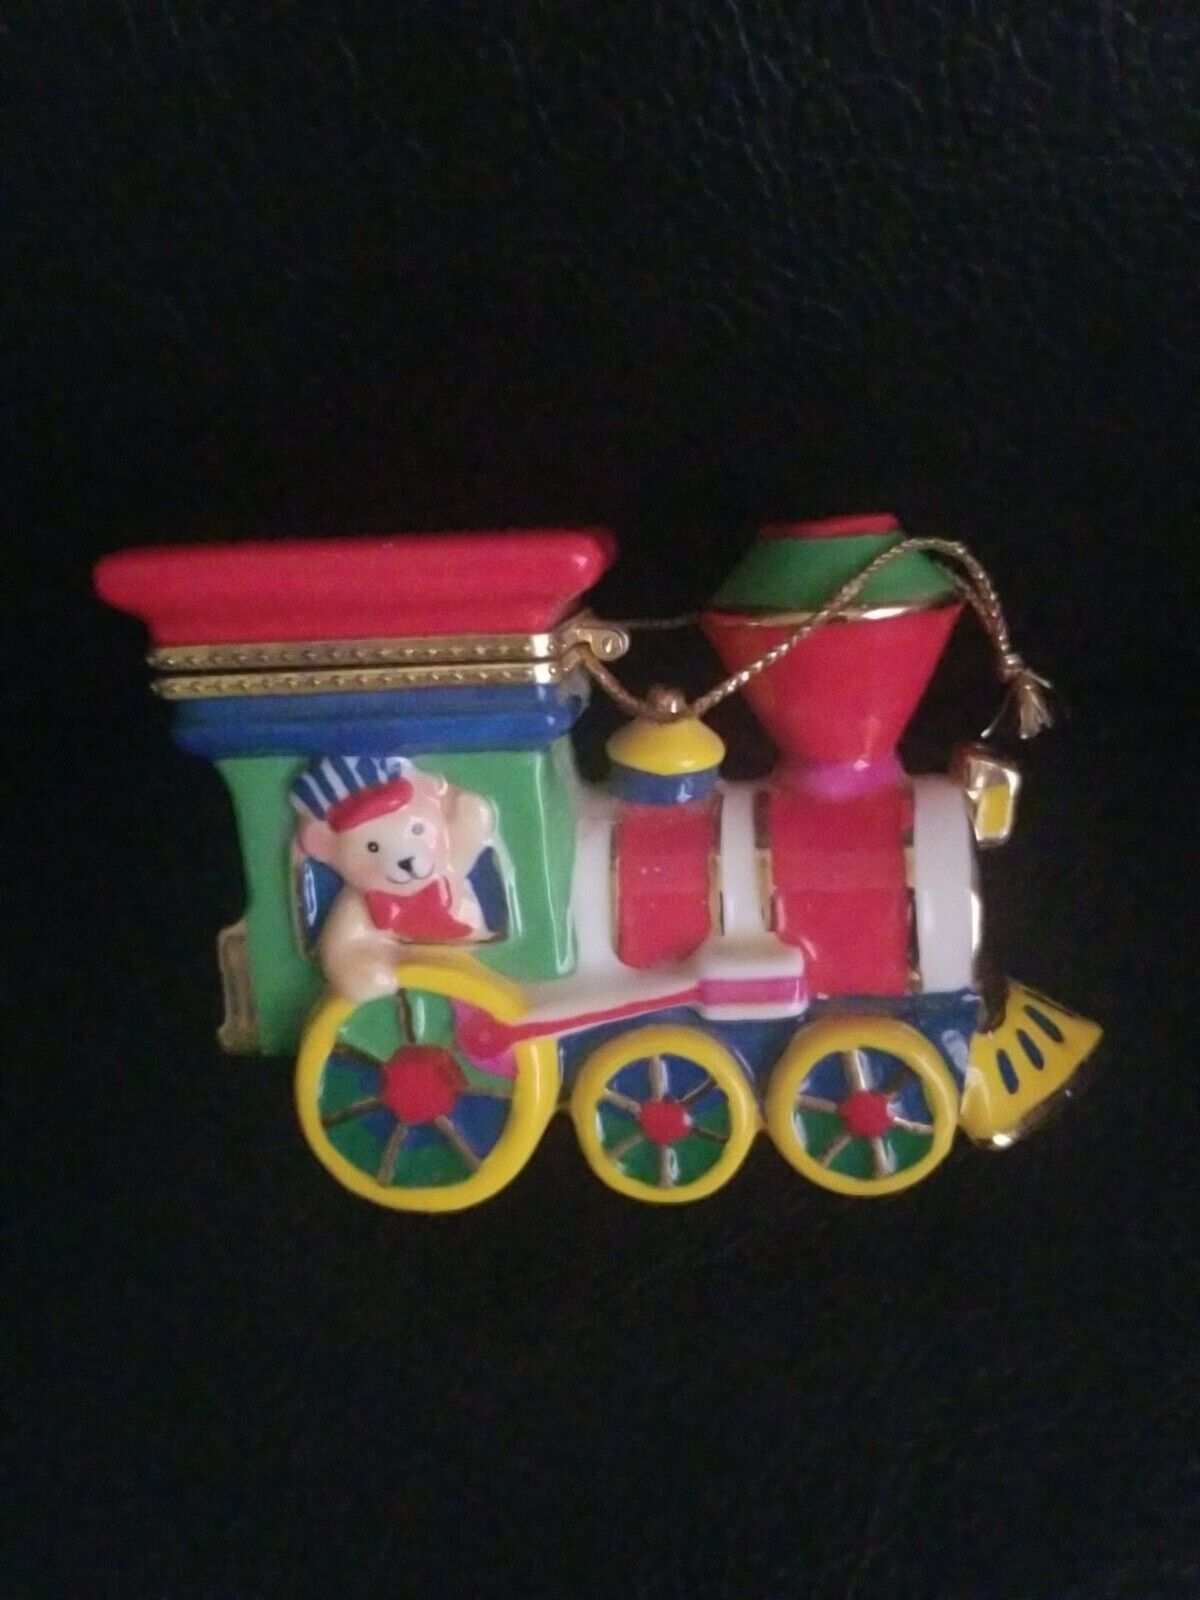 AGC. Inc 2001 Porcelain Trinket Box Colorful Train with Teddy Bear Christmas